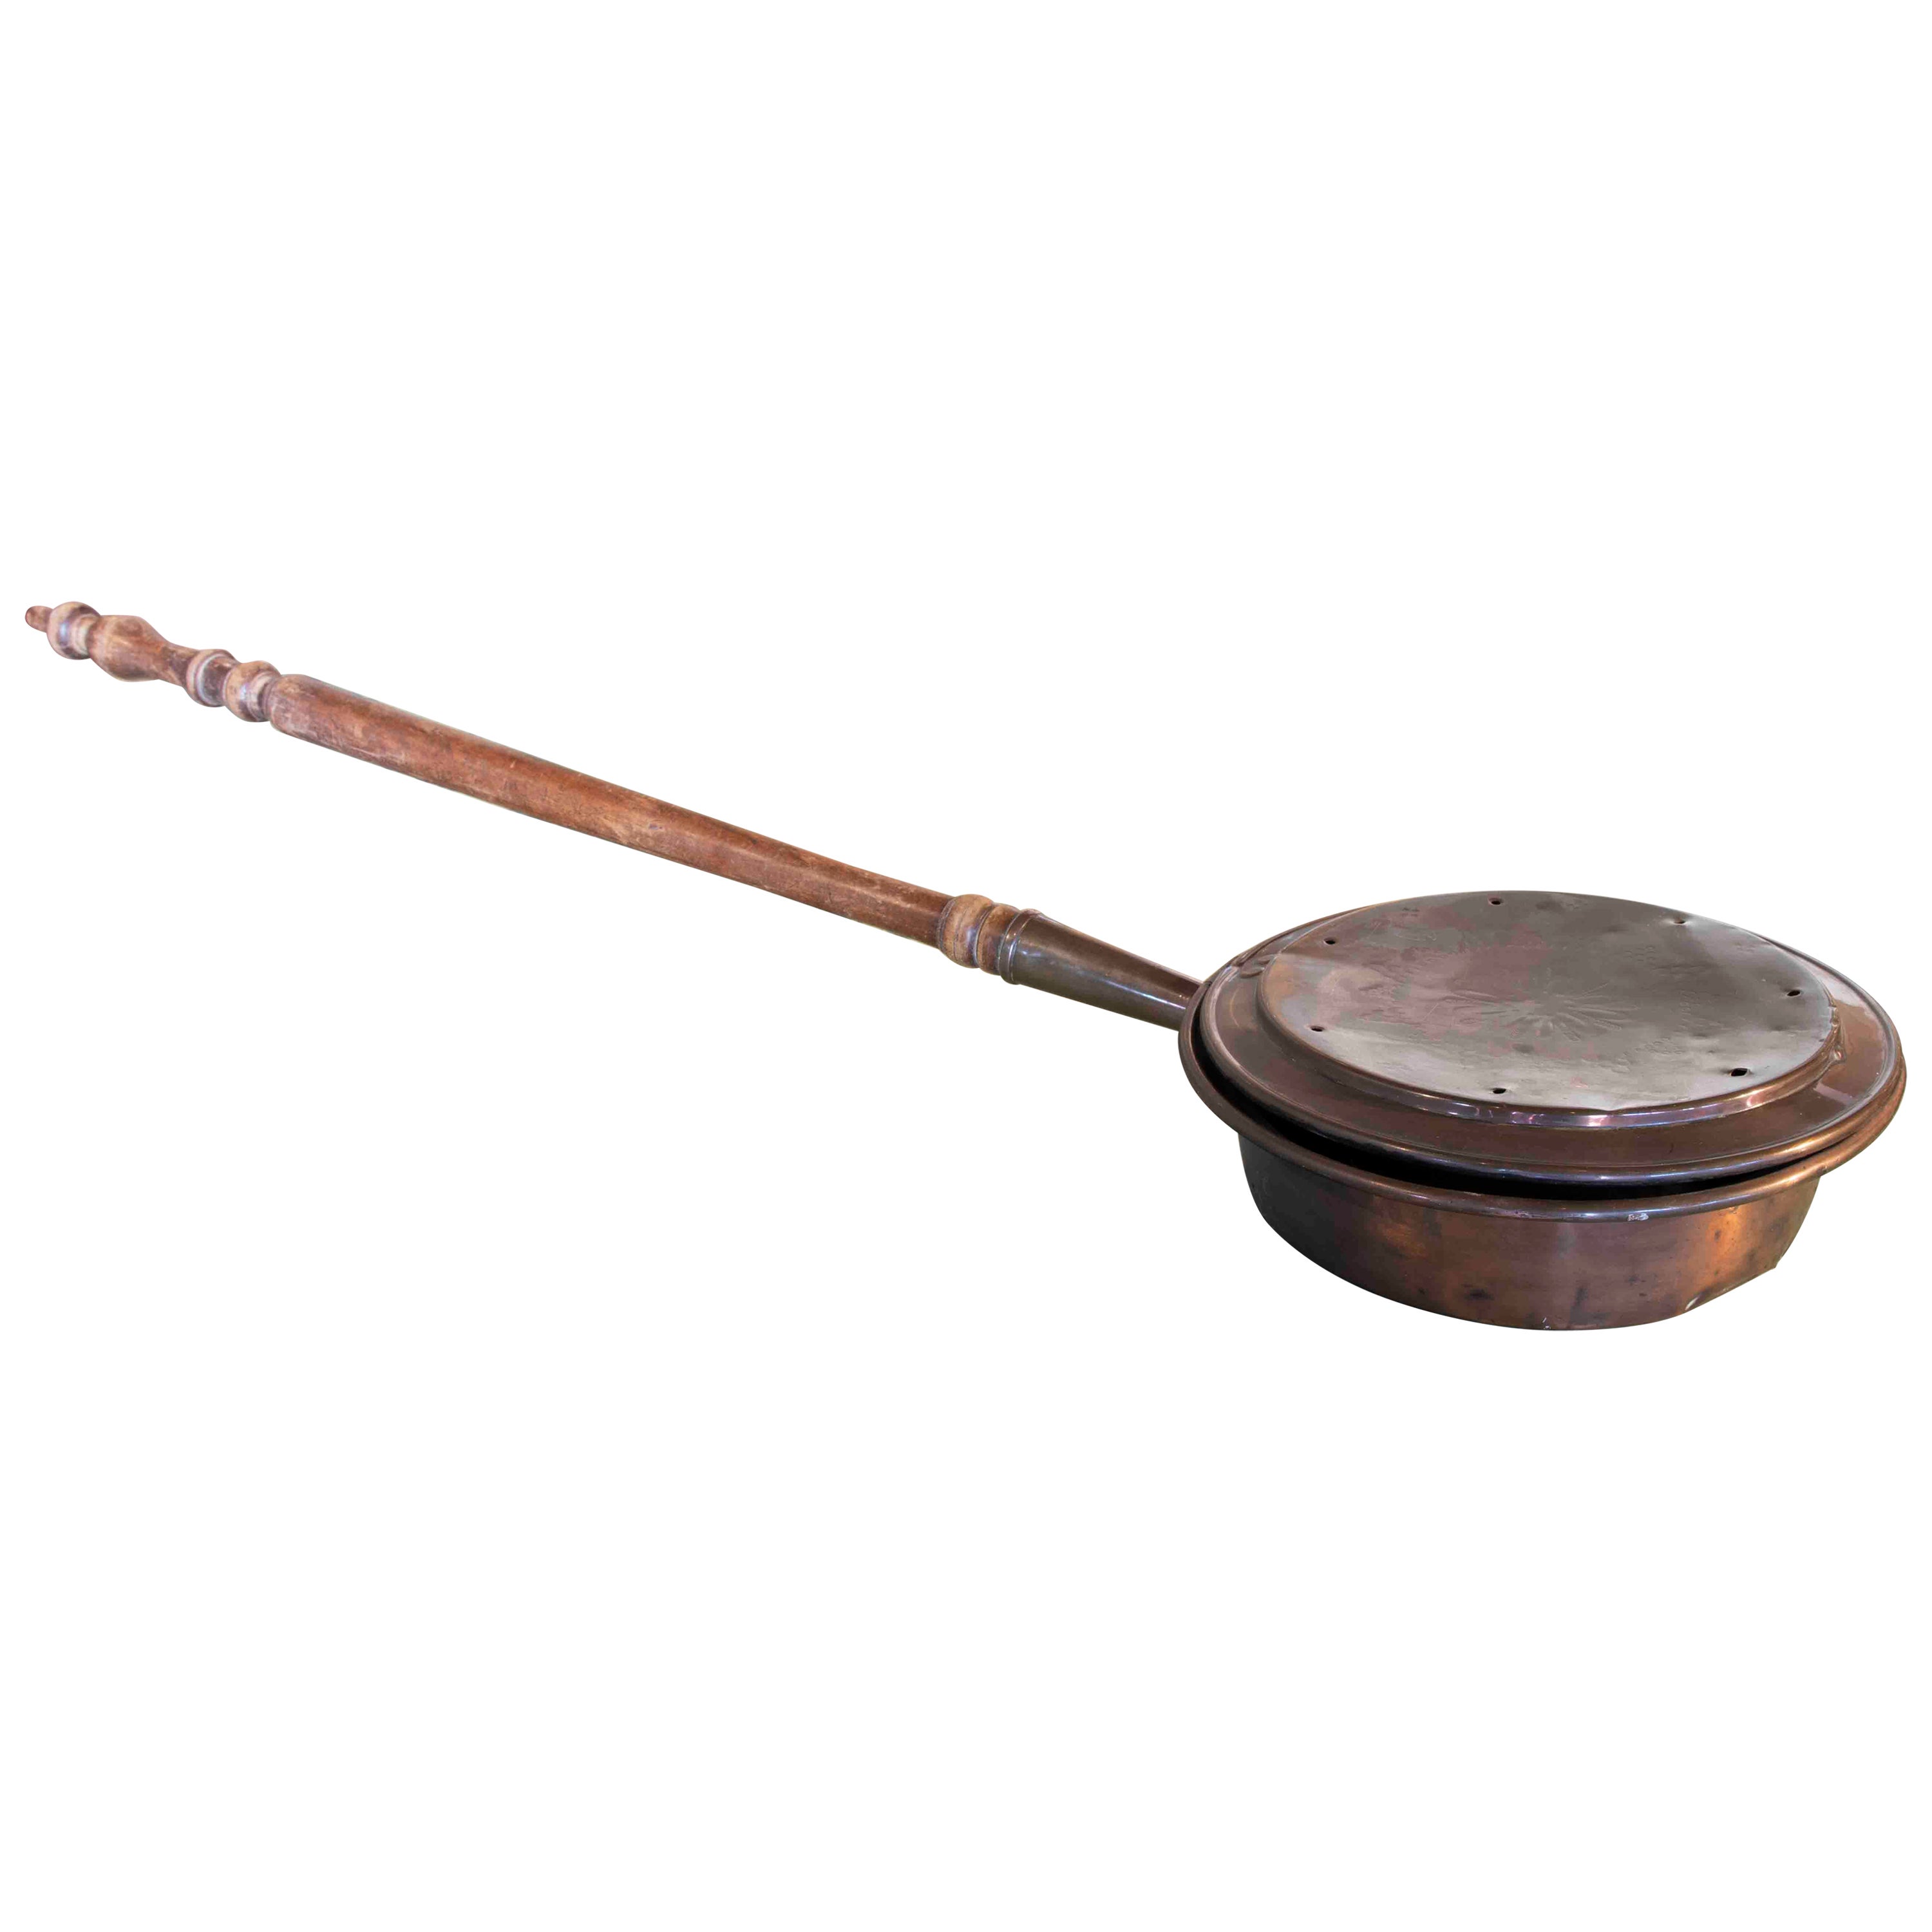 Warmeur de chevet espagnol du 19ème siècle en cuivre avec poignée en bois